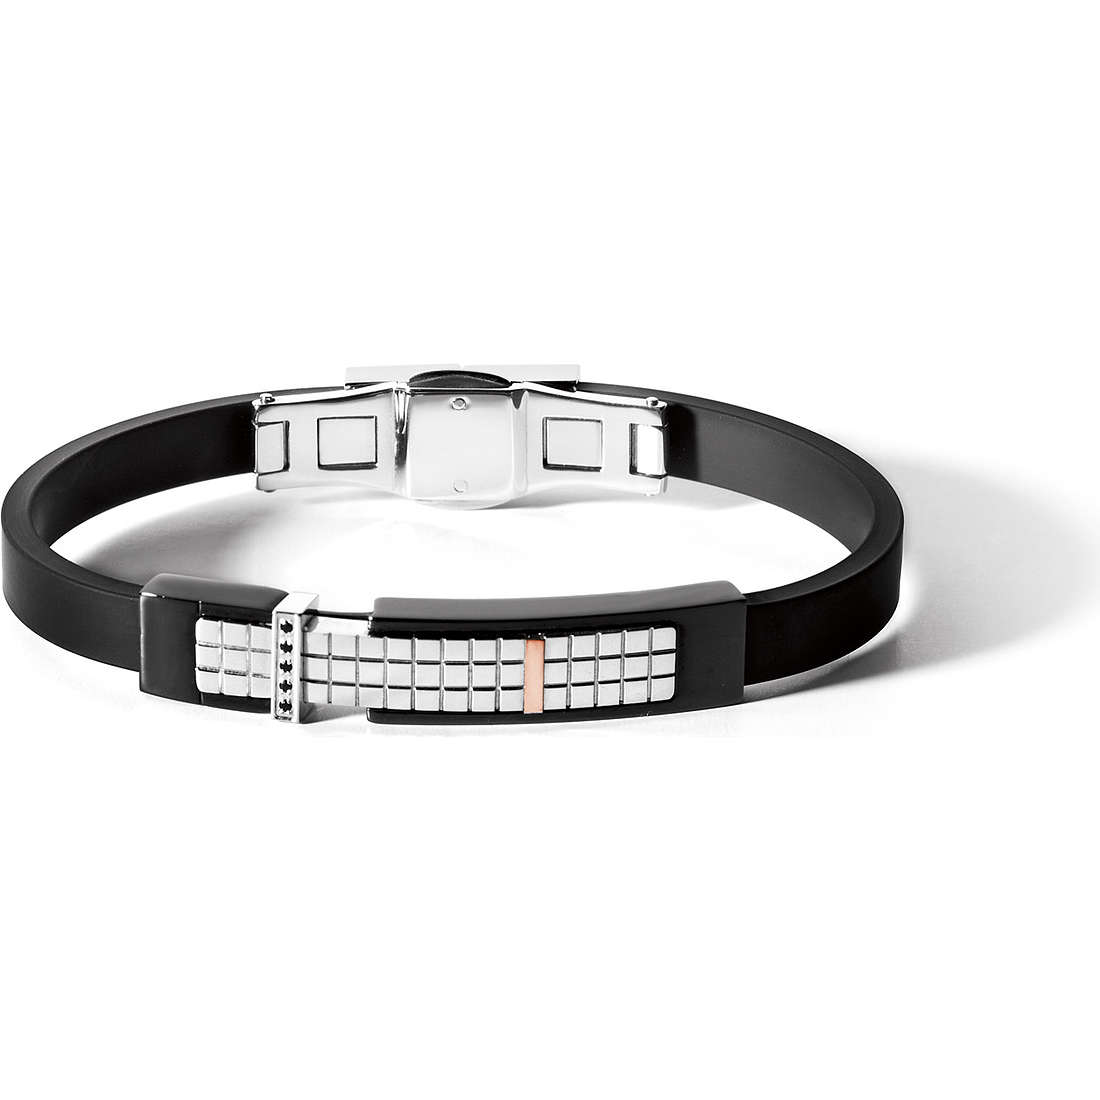 UBR 485 Steel Jewelry Men’s Bracelet